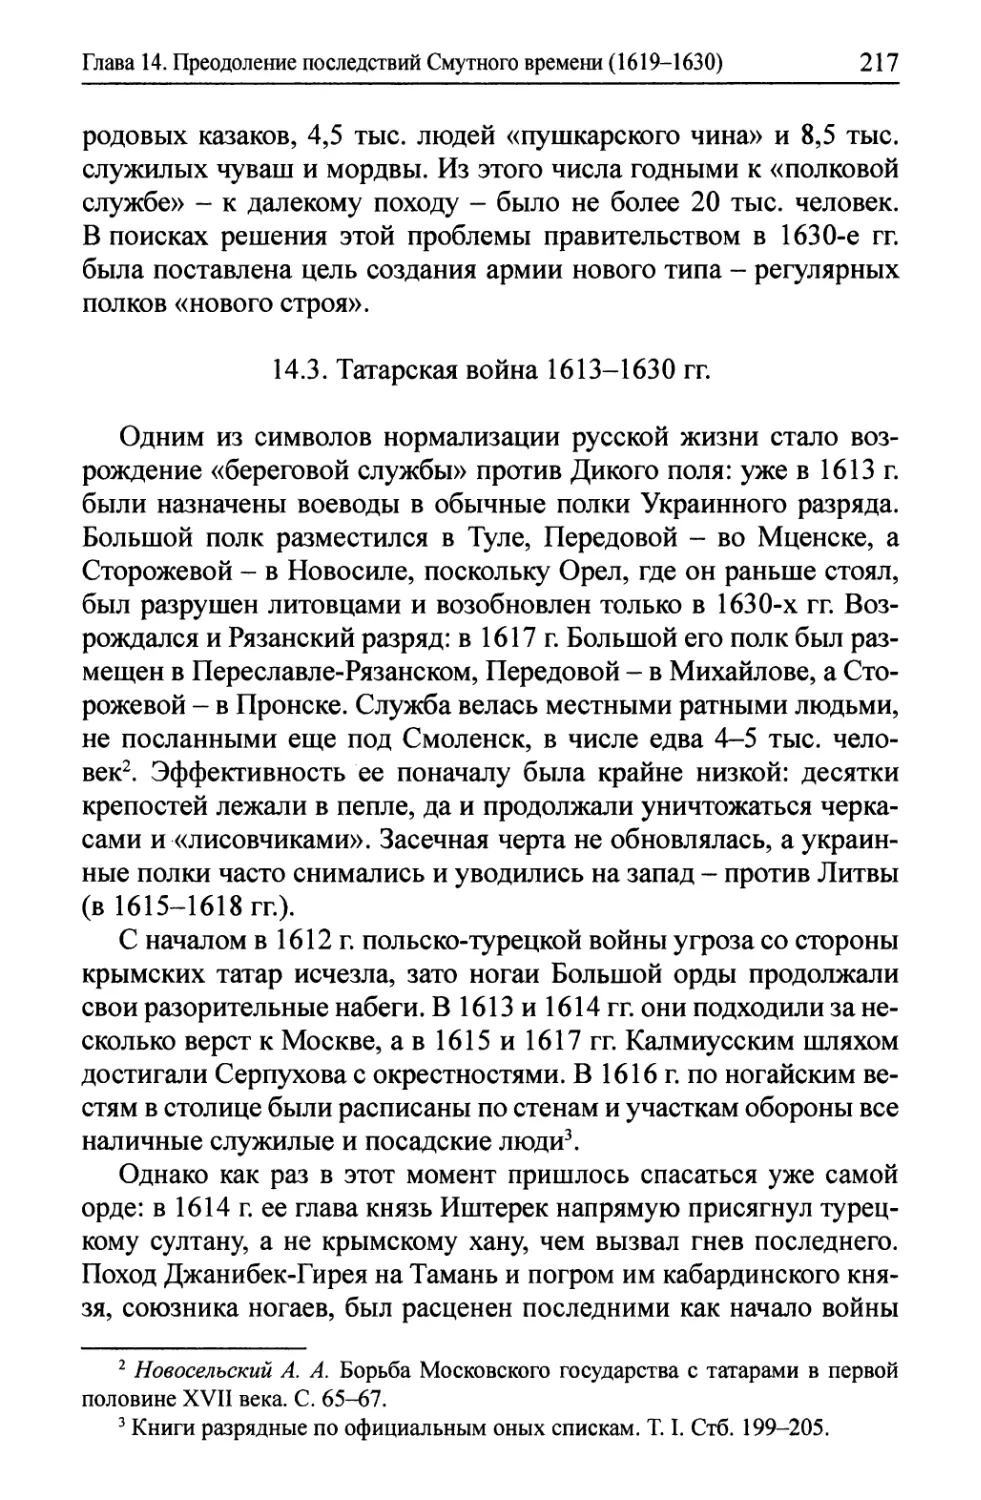 14.3. Татарская война 1613-1630 гг